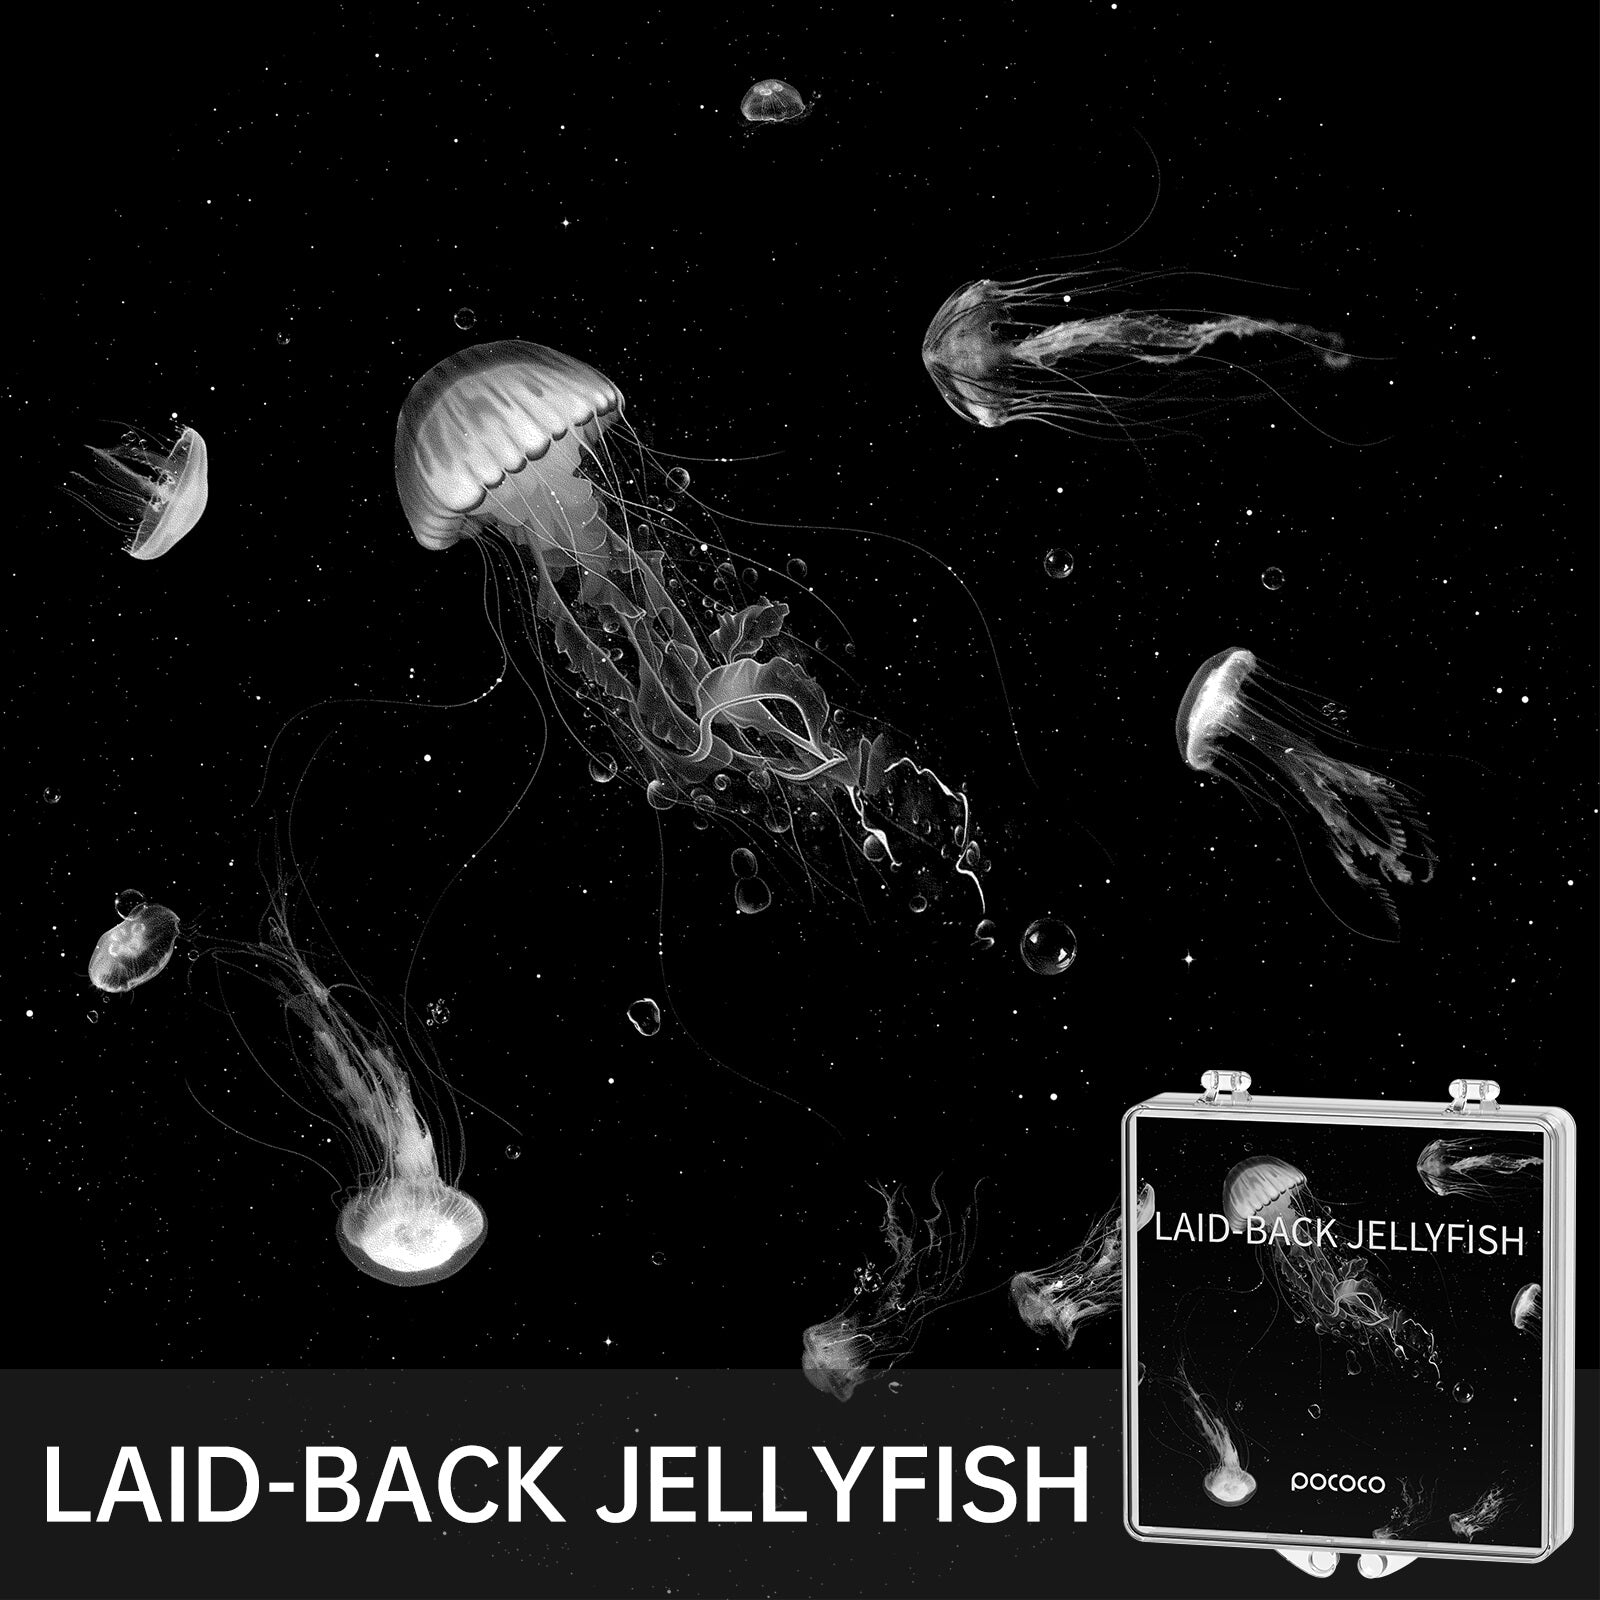 POCOCO Galaxy Projector  Disc - Laid-Back Jellyfish